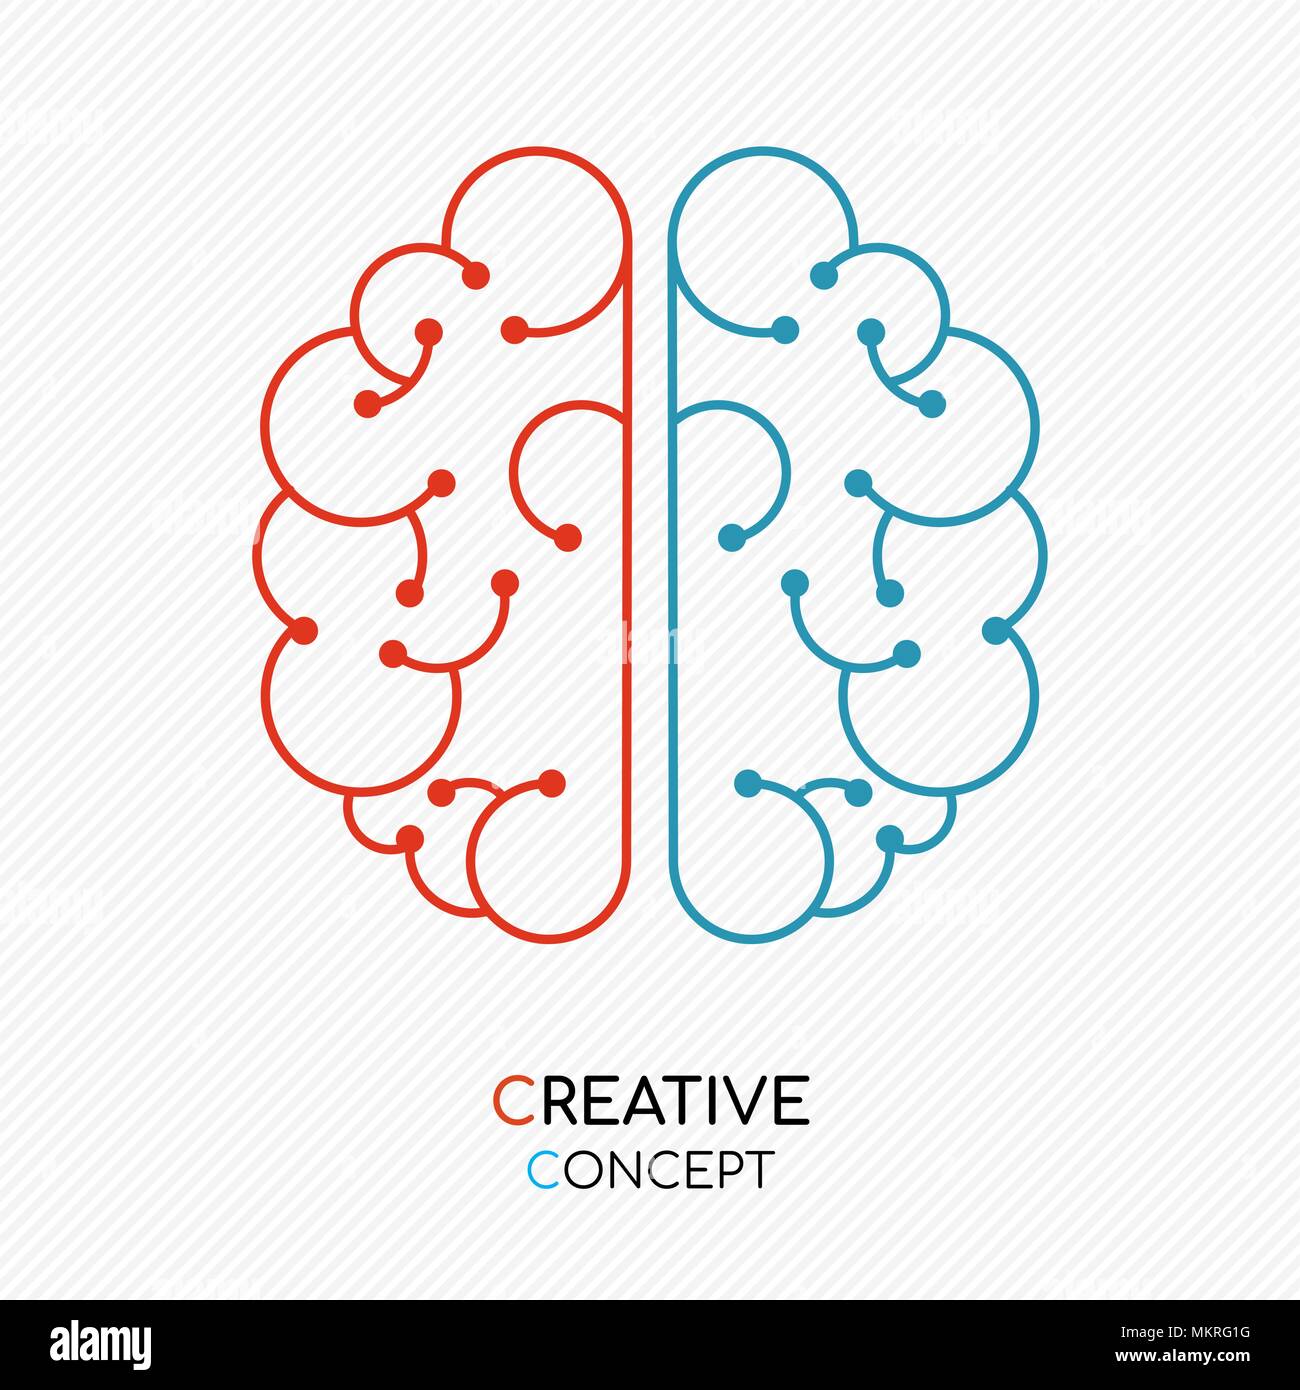 La pensée créative concept illustration du cerveau humain en style du contour moderne. Vecteur EPS10. Illustration de Vecteur